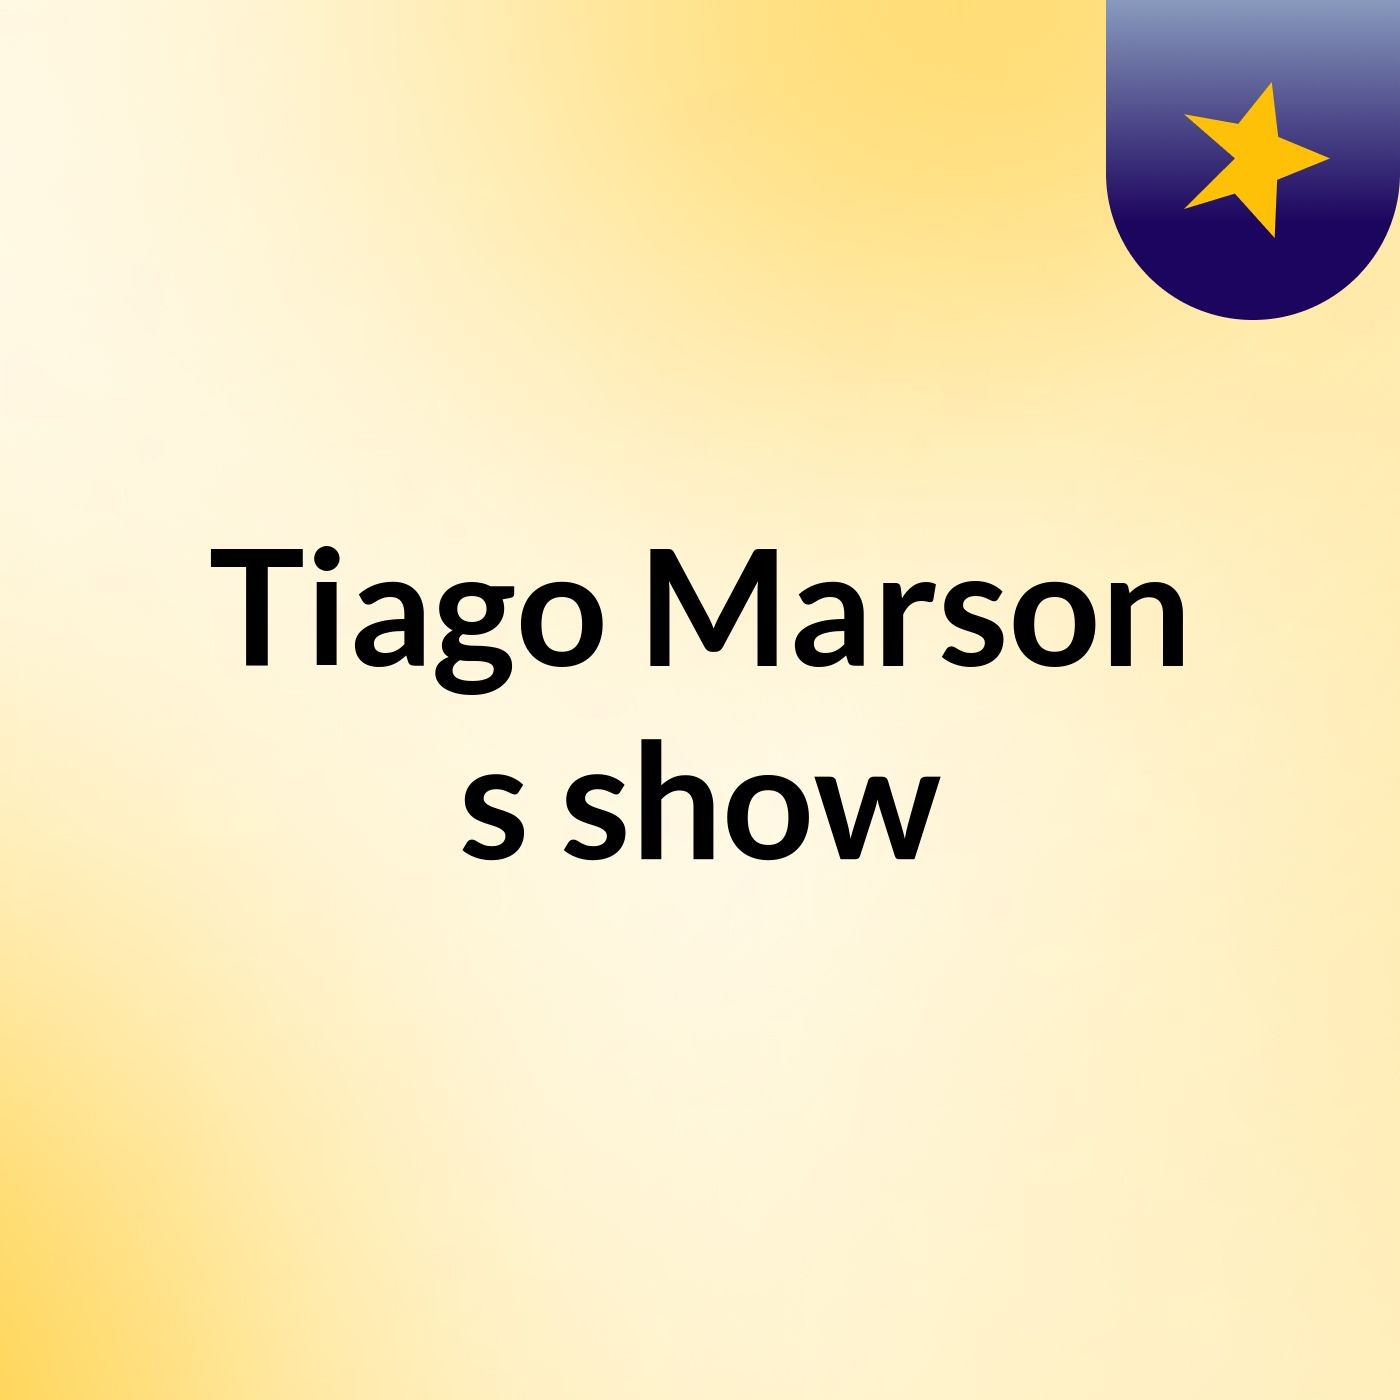 Tiago Marson's show